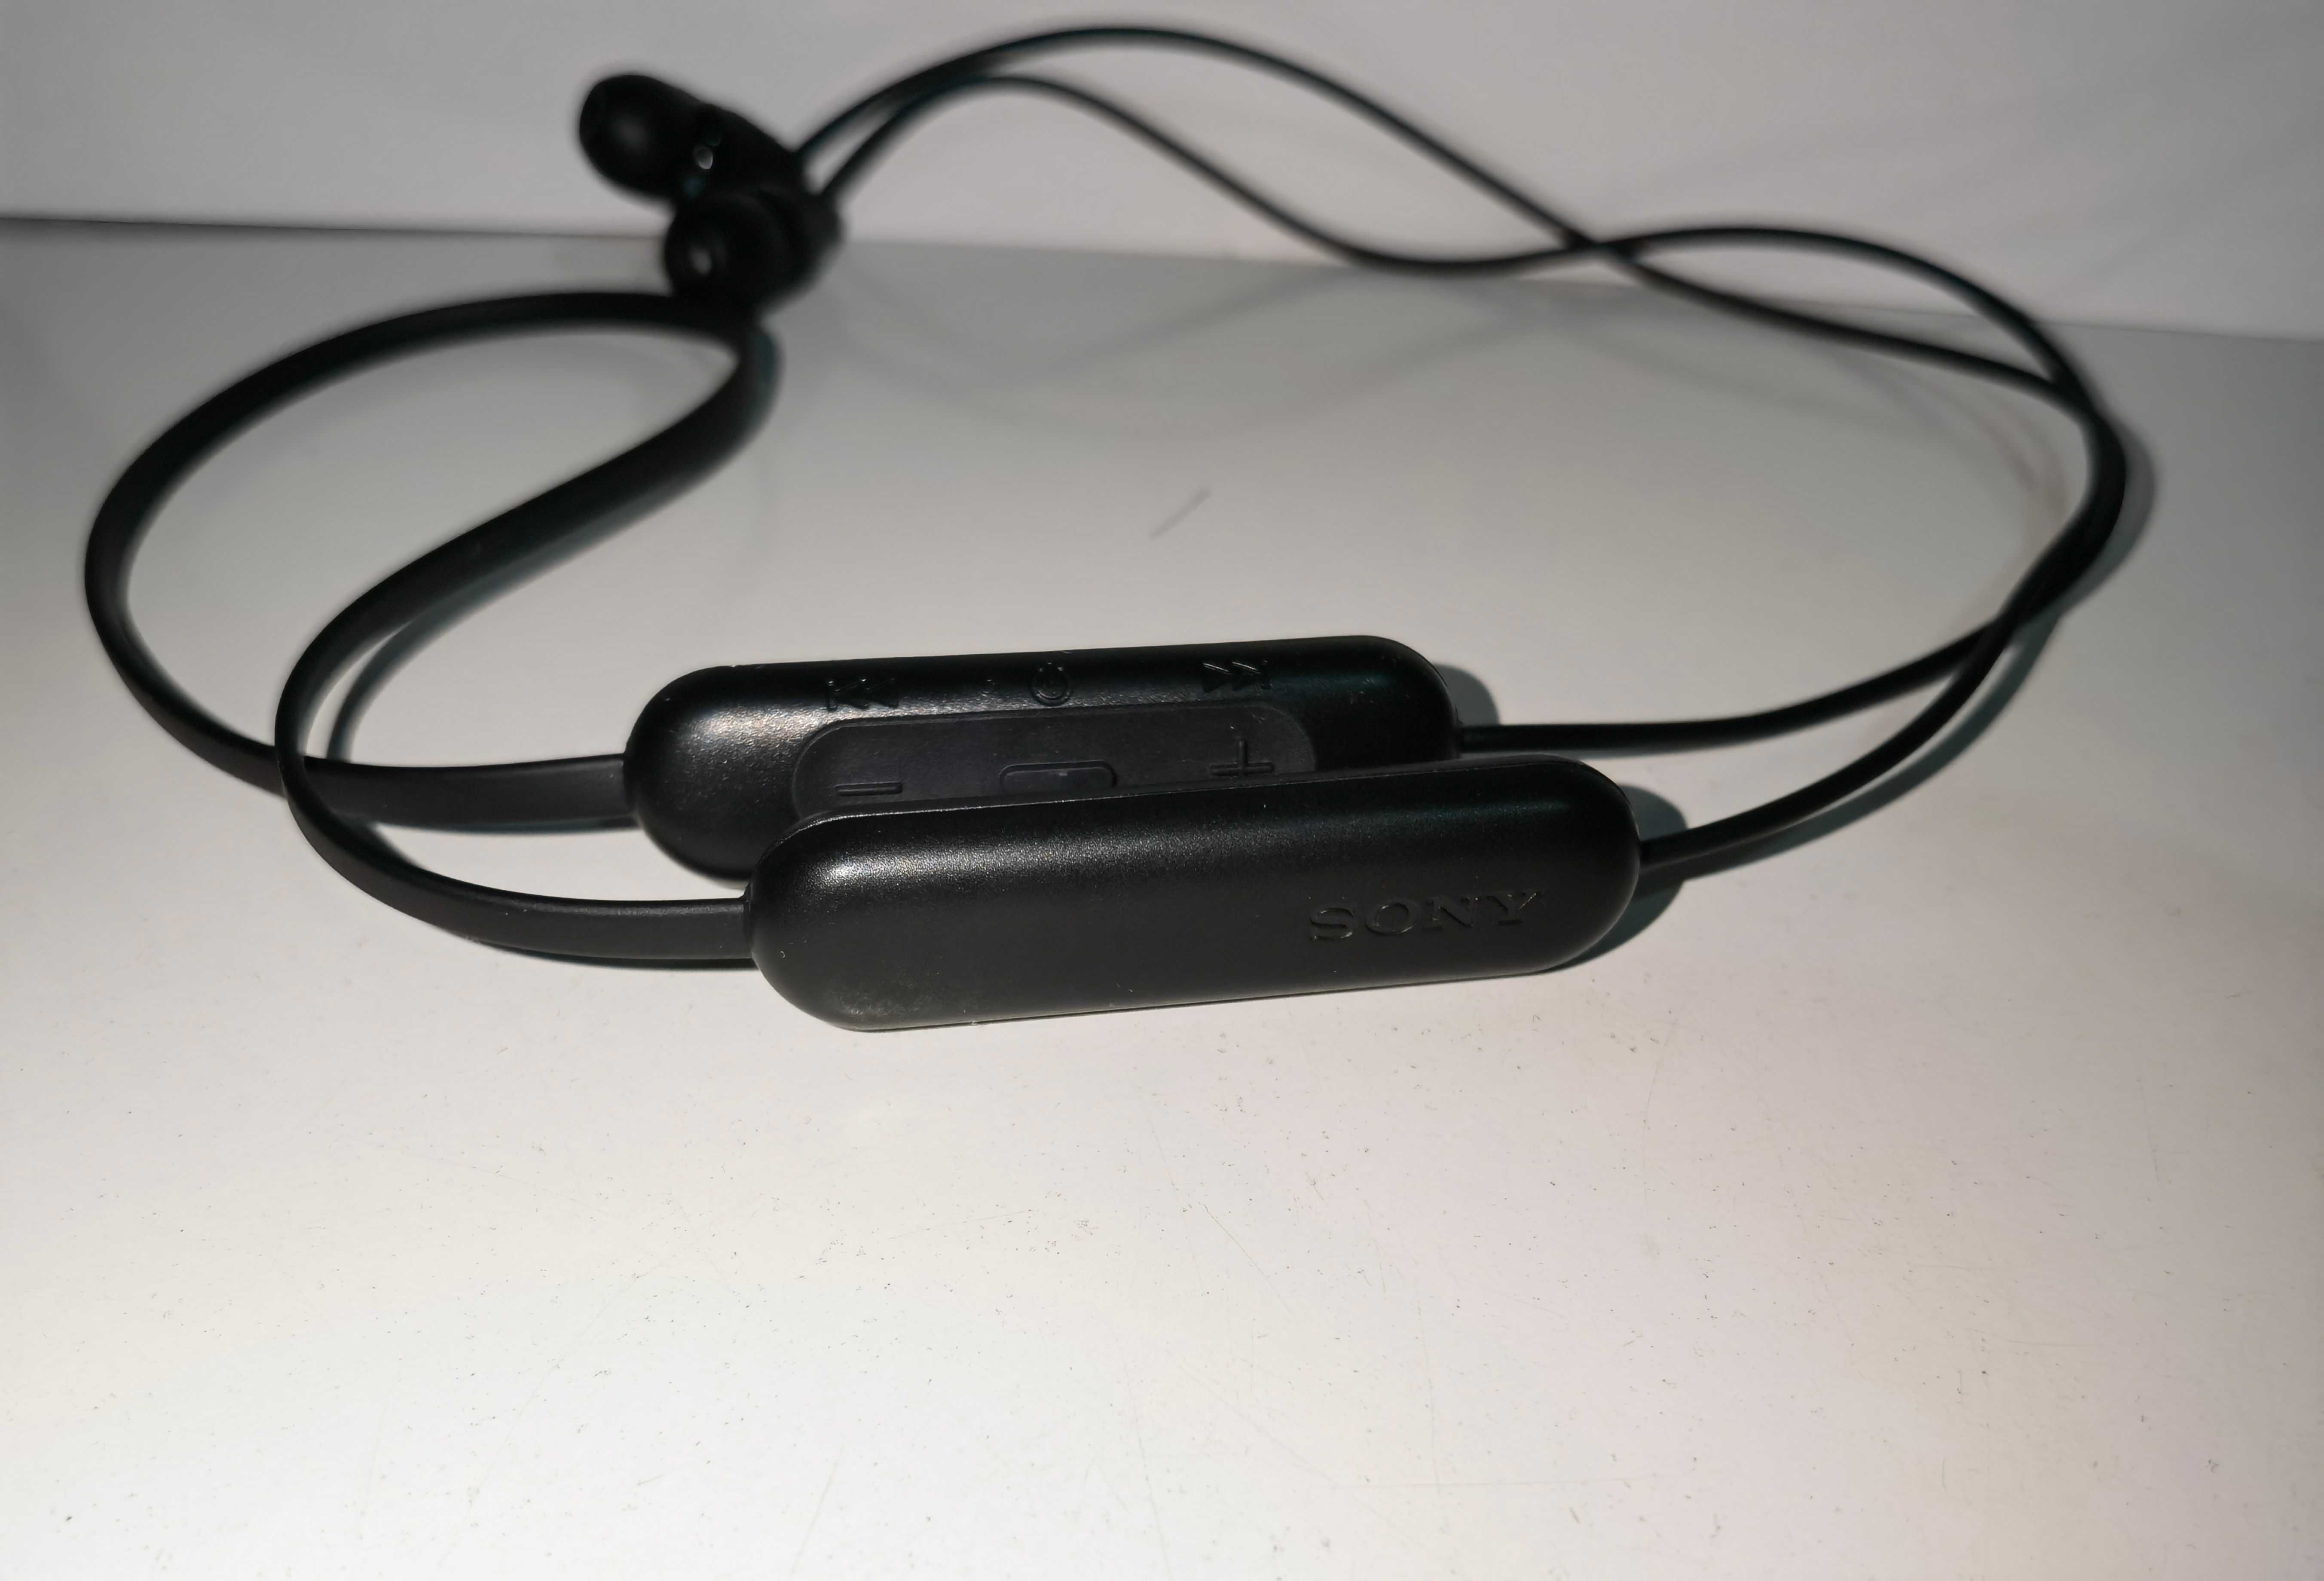 Auscultadores tipo auricular sem fios WI-C200 (pouco usados)